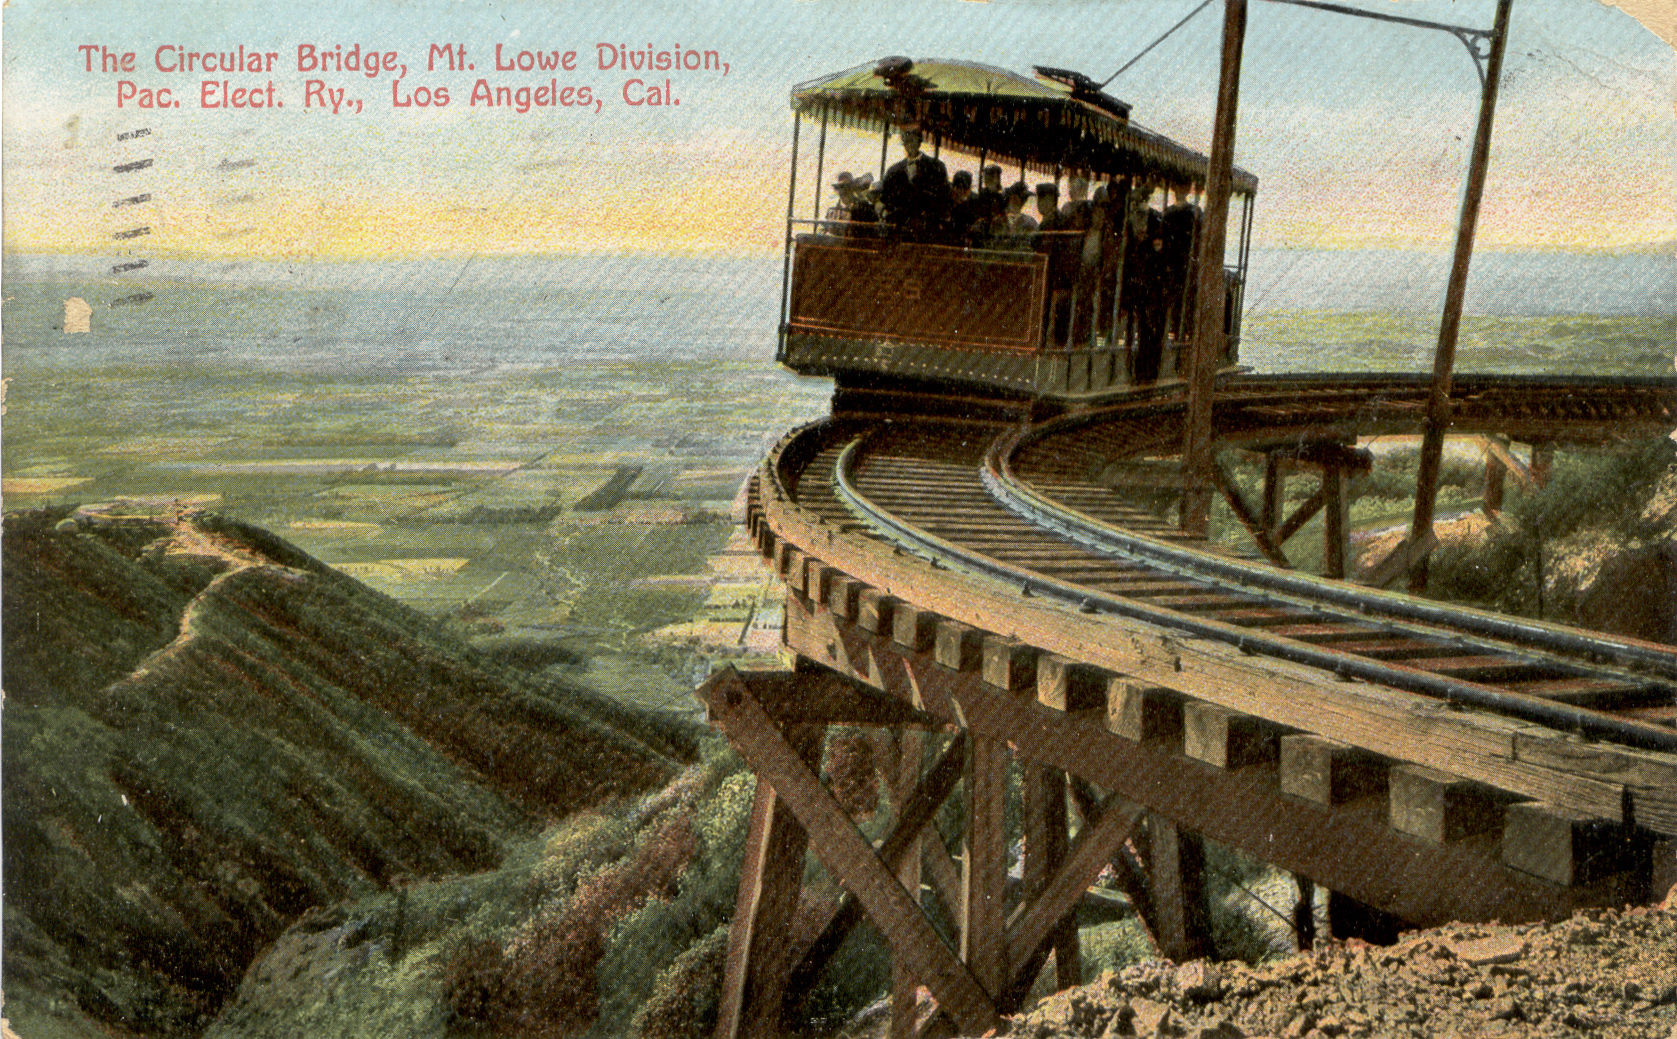 Circular Bridge, Mt Lowe Division, Pac Electric Railway, LA CA